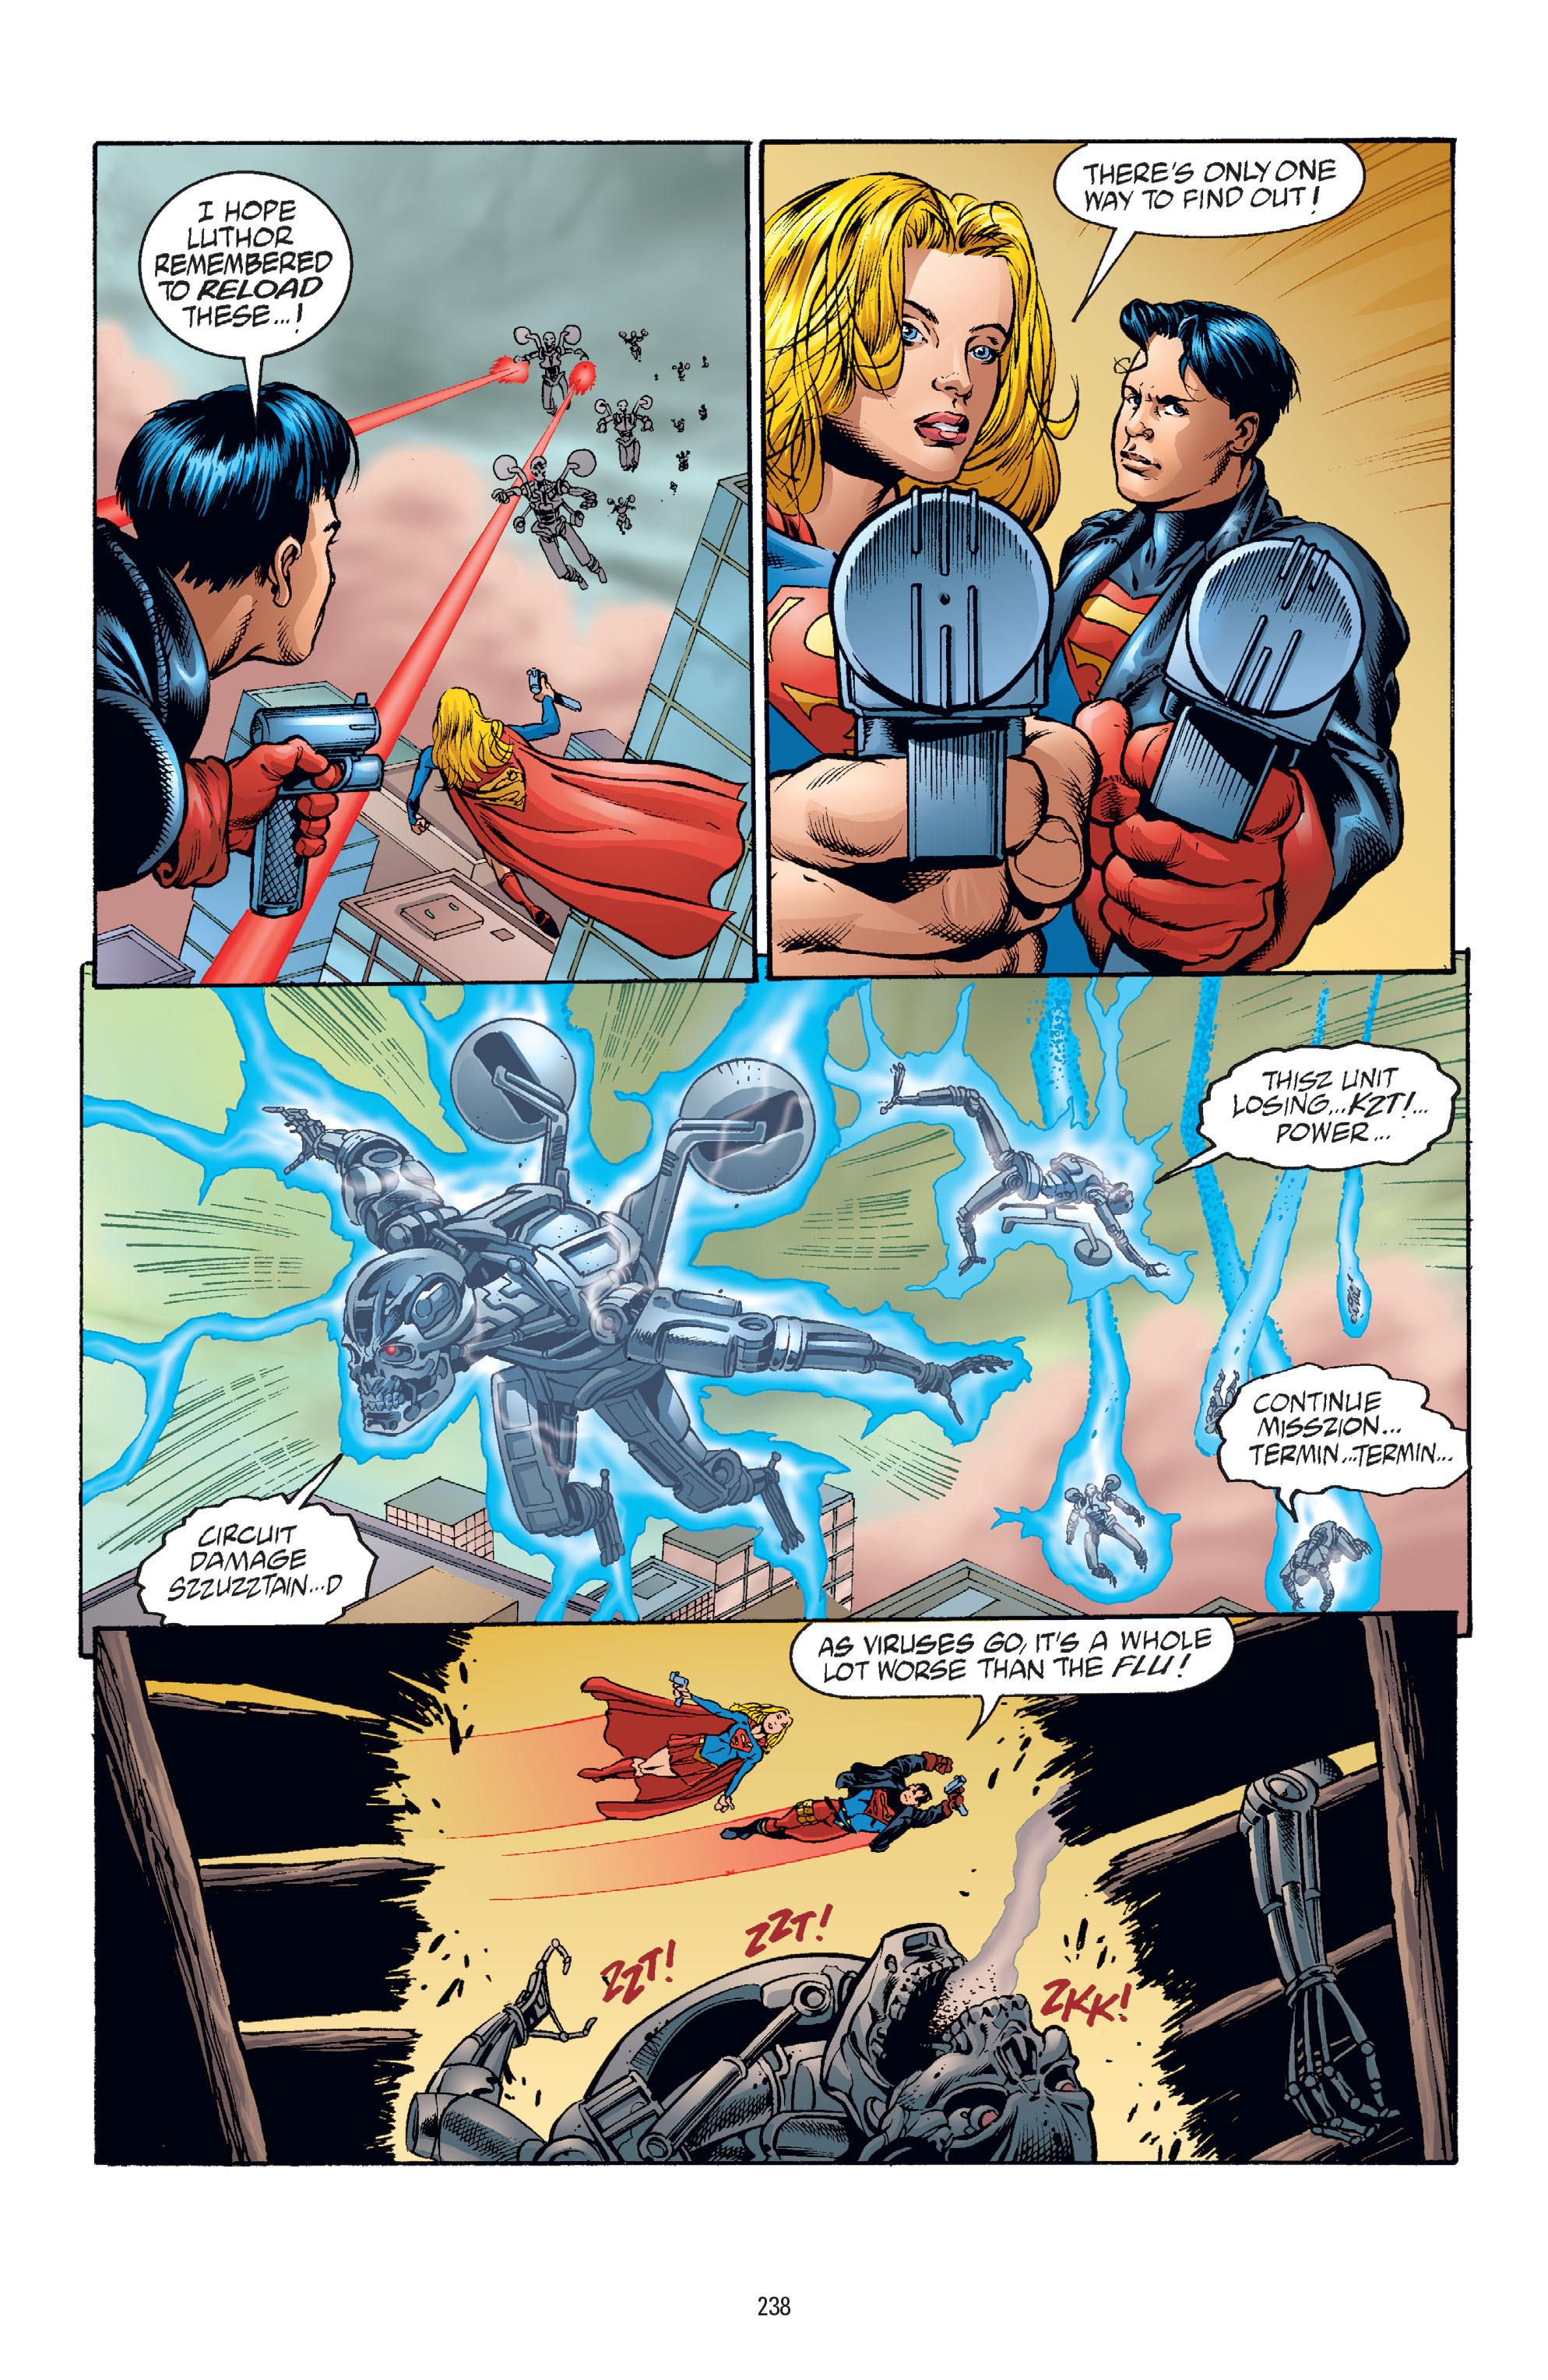 DC Comics/Dark Horse Comics: Justice League Full #1 - English 230